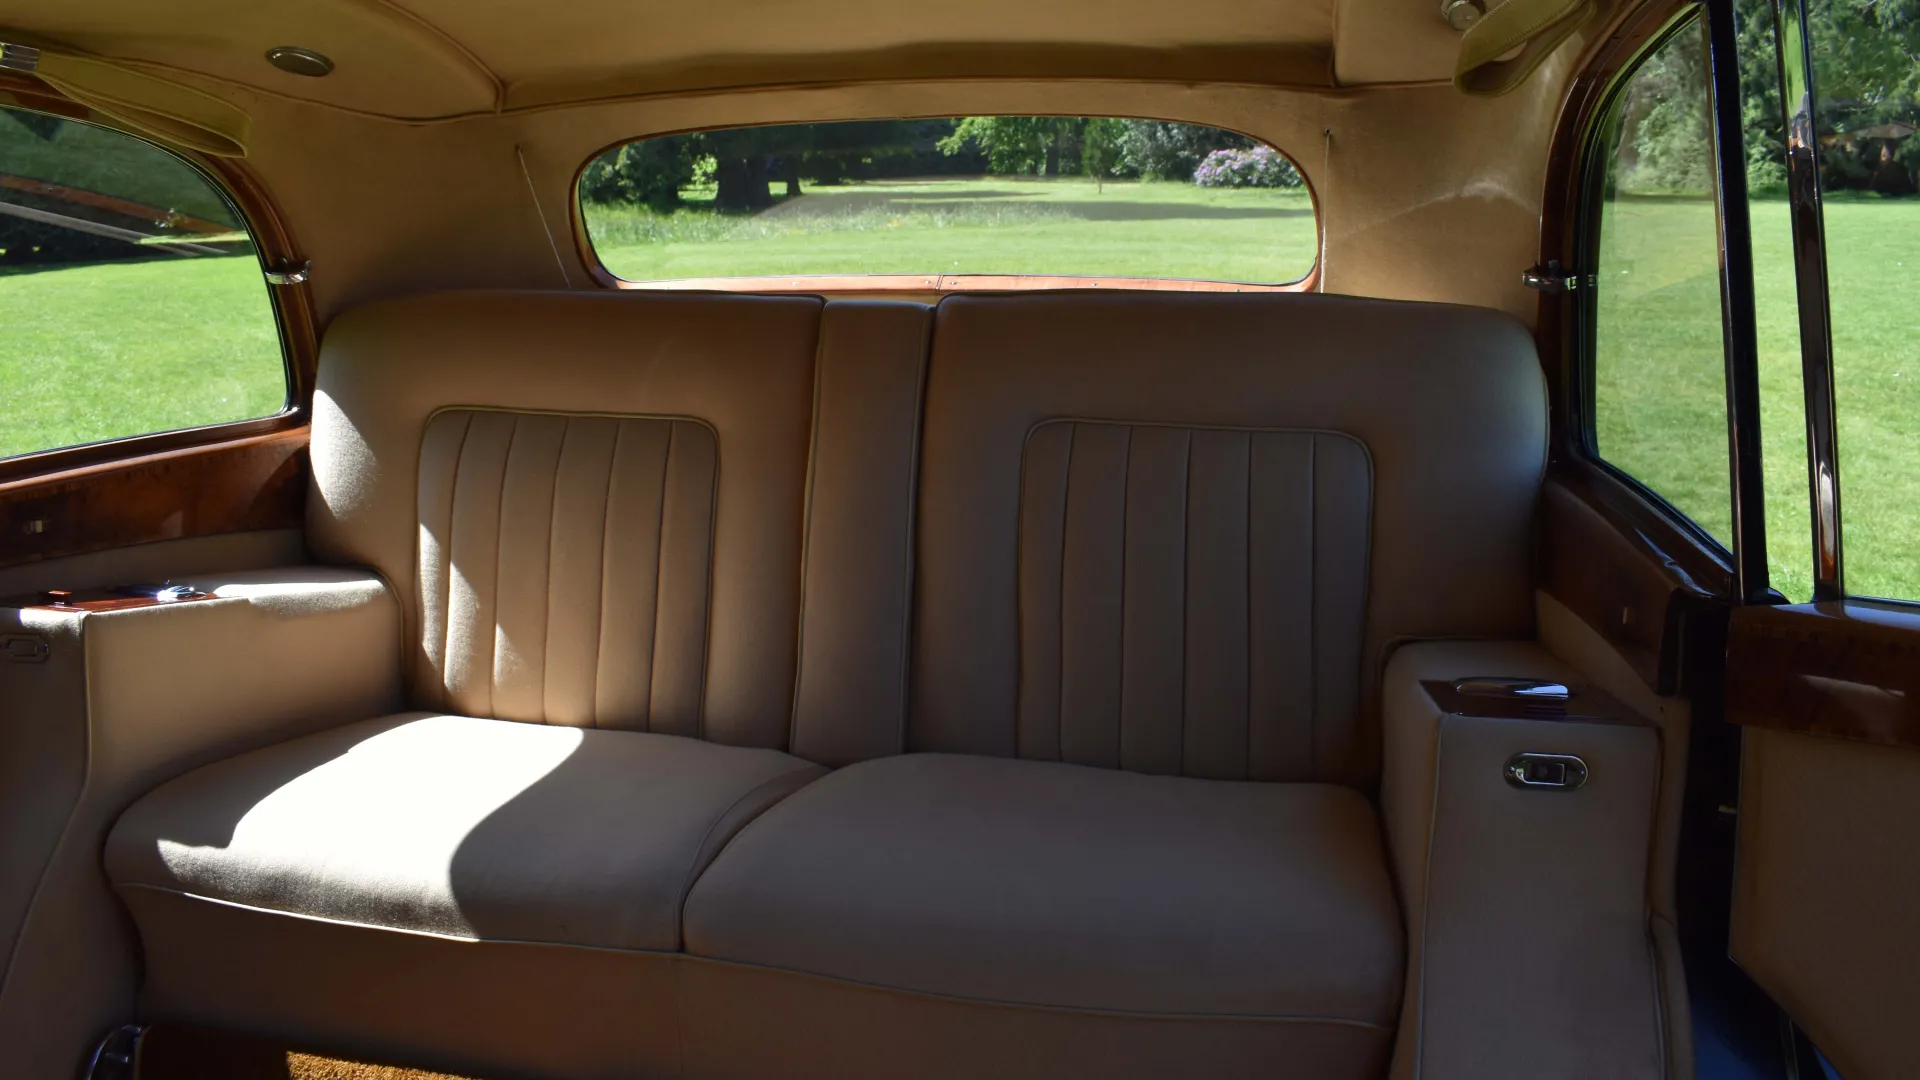 Rolls-Royce silver Wraith LWB rear bench seat in cream